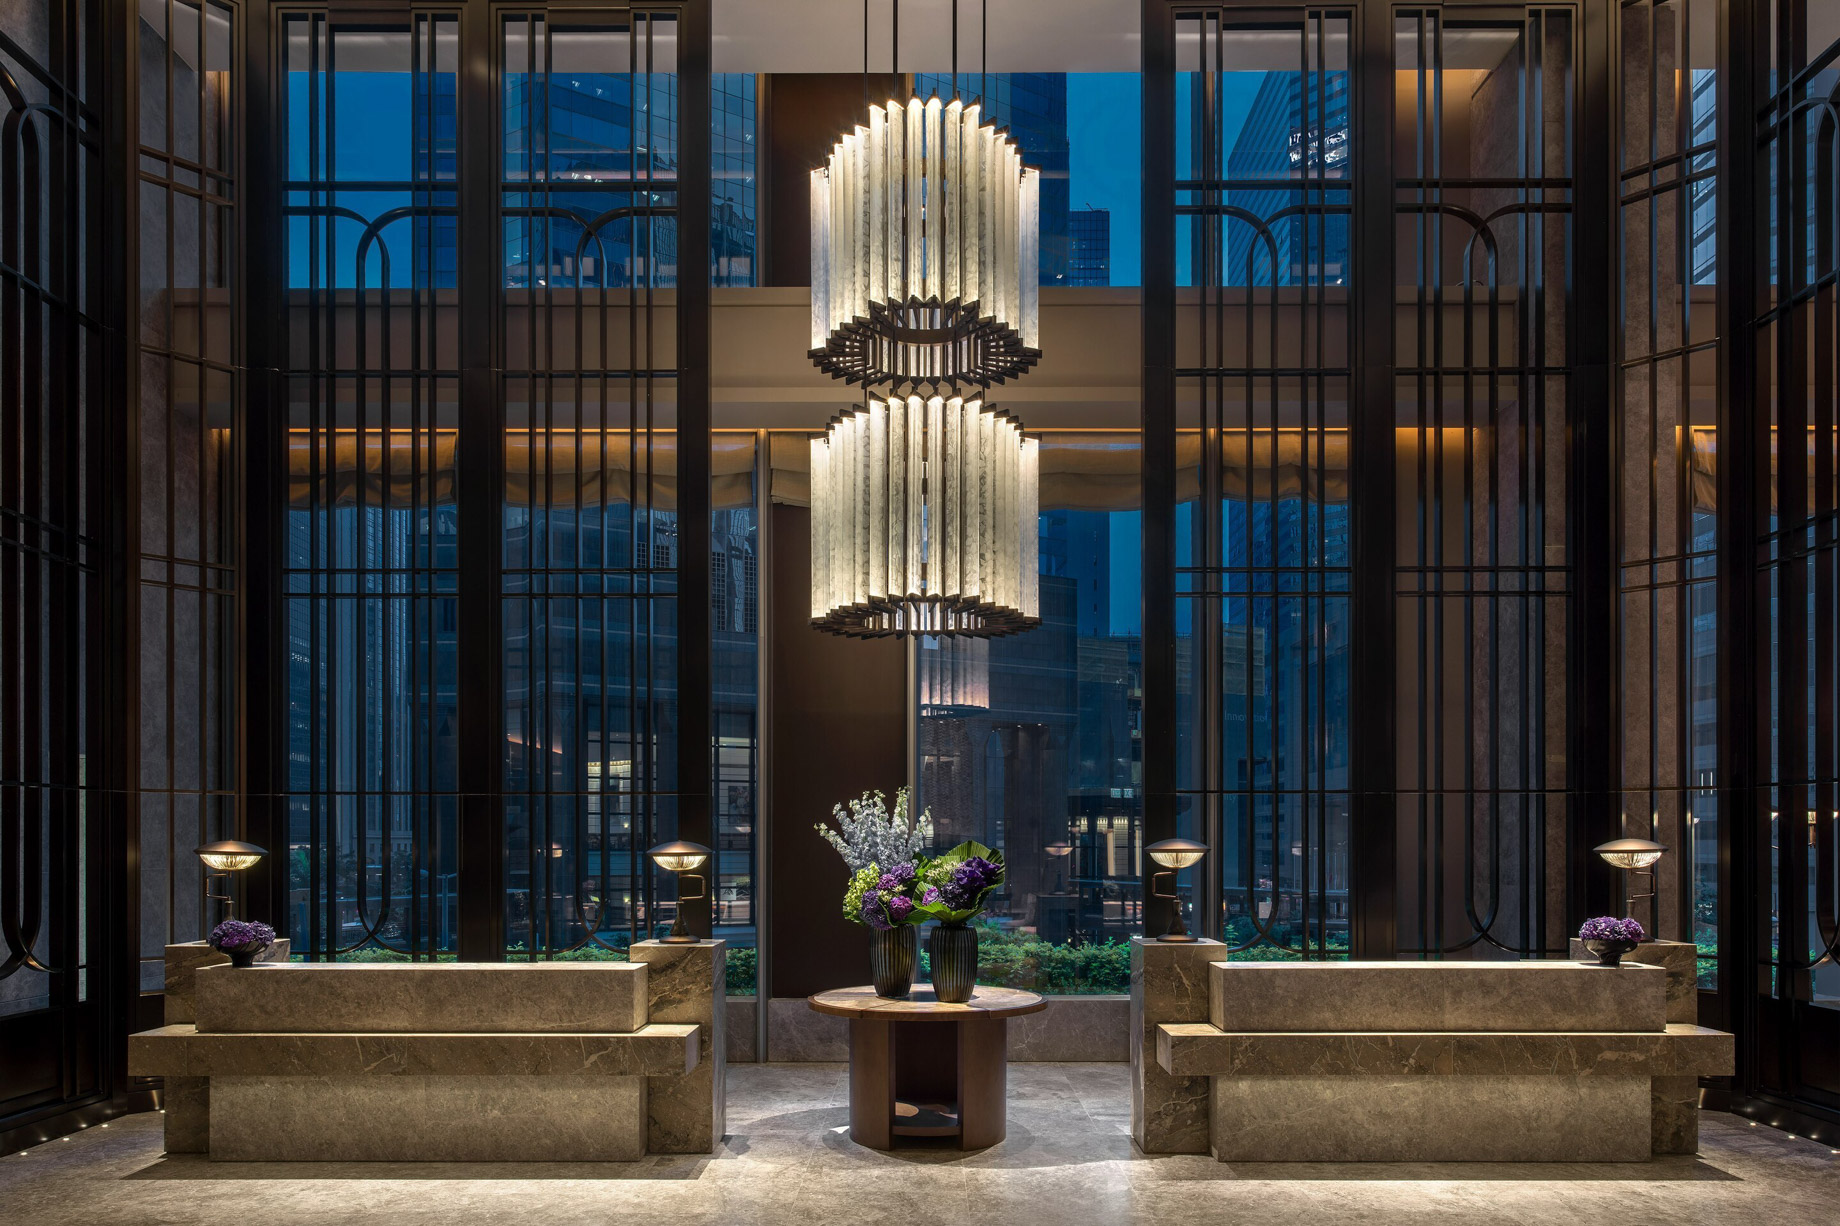 The St. Regis Hong Kong Hotel – Wan Chai, Hong Kong – The Great Room